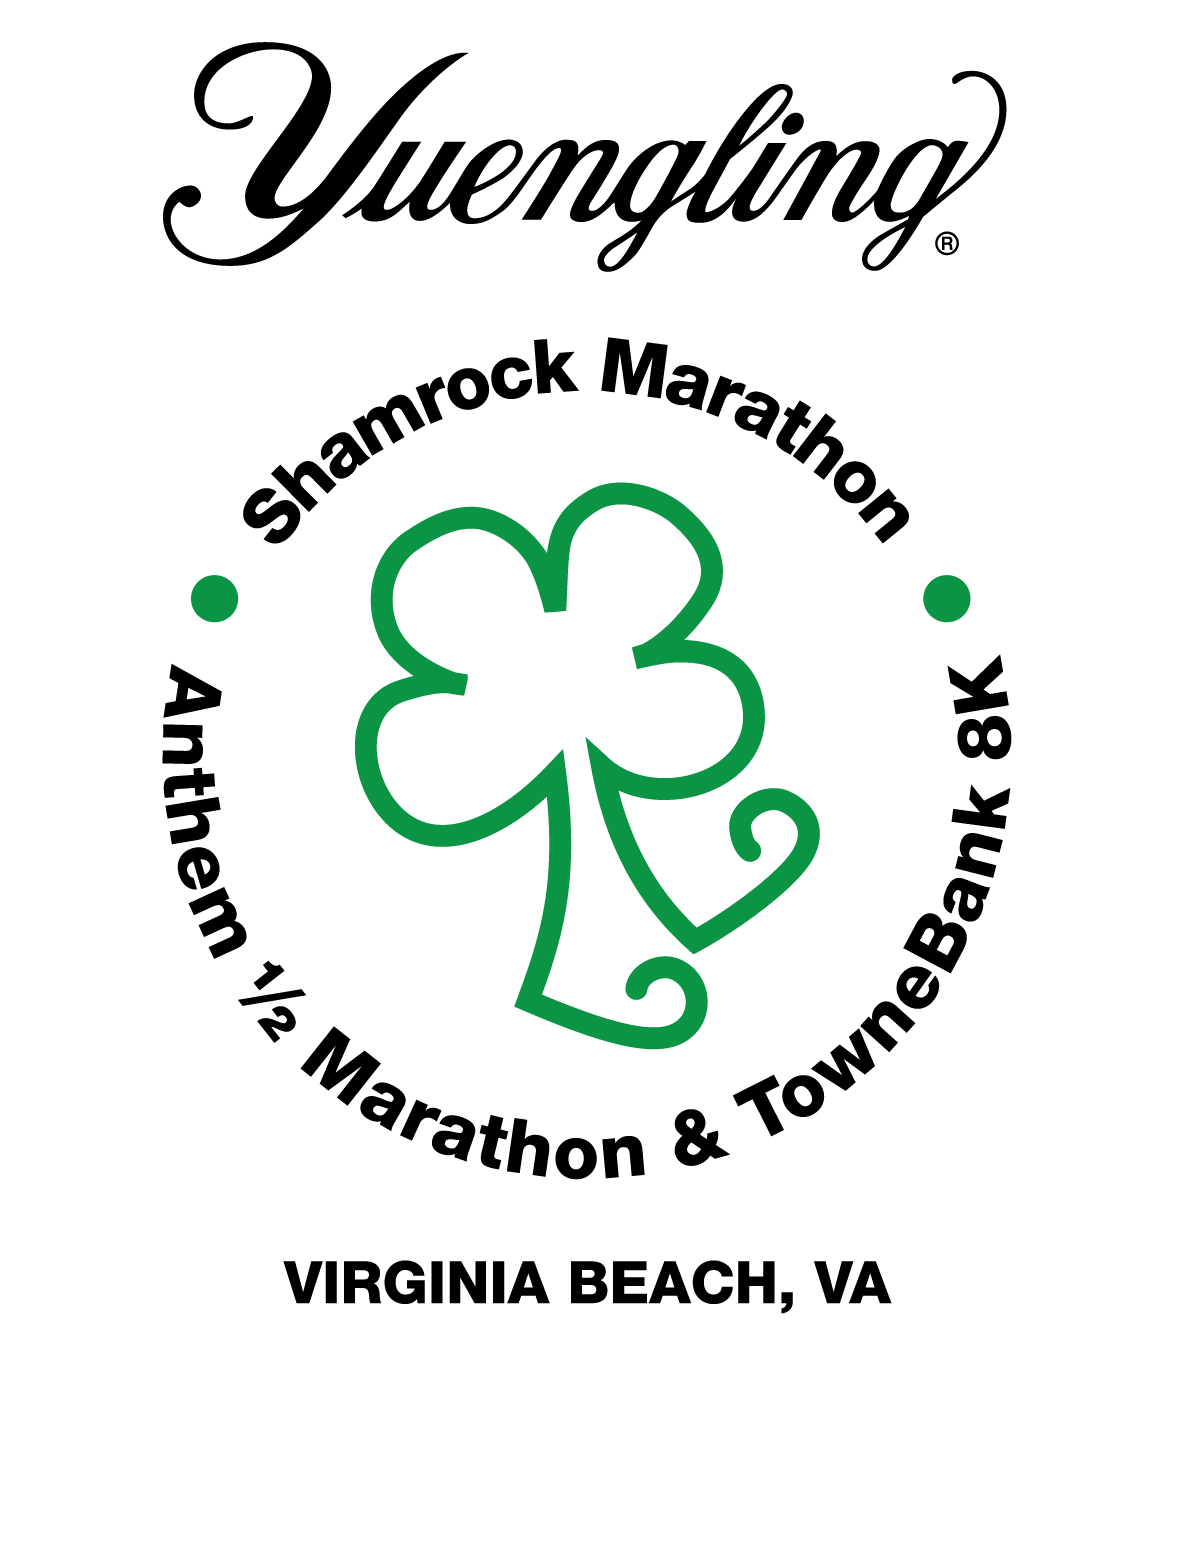 Yuengling Logo - Yuengling Shamrock Marathon Weekend | Run For Shamrock